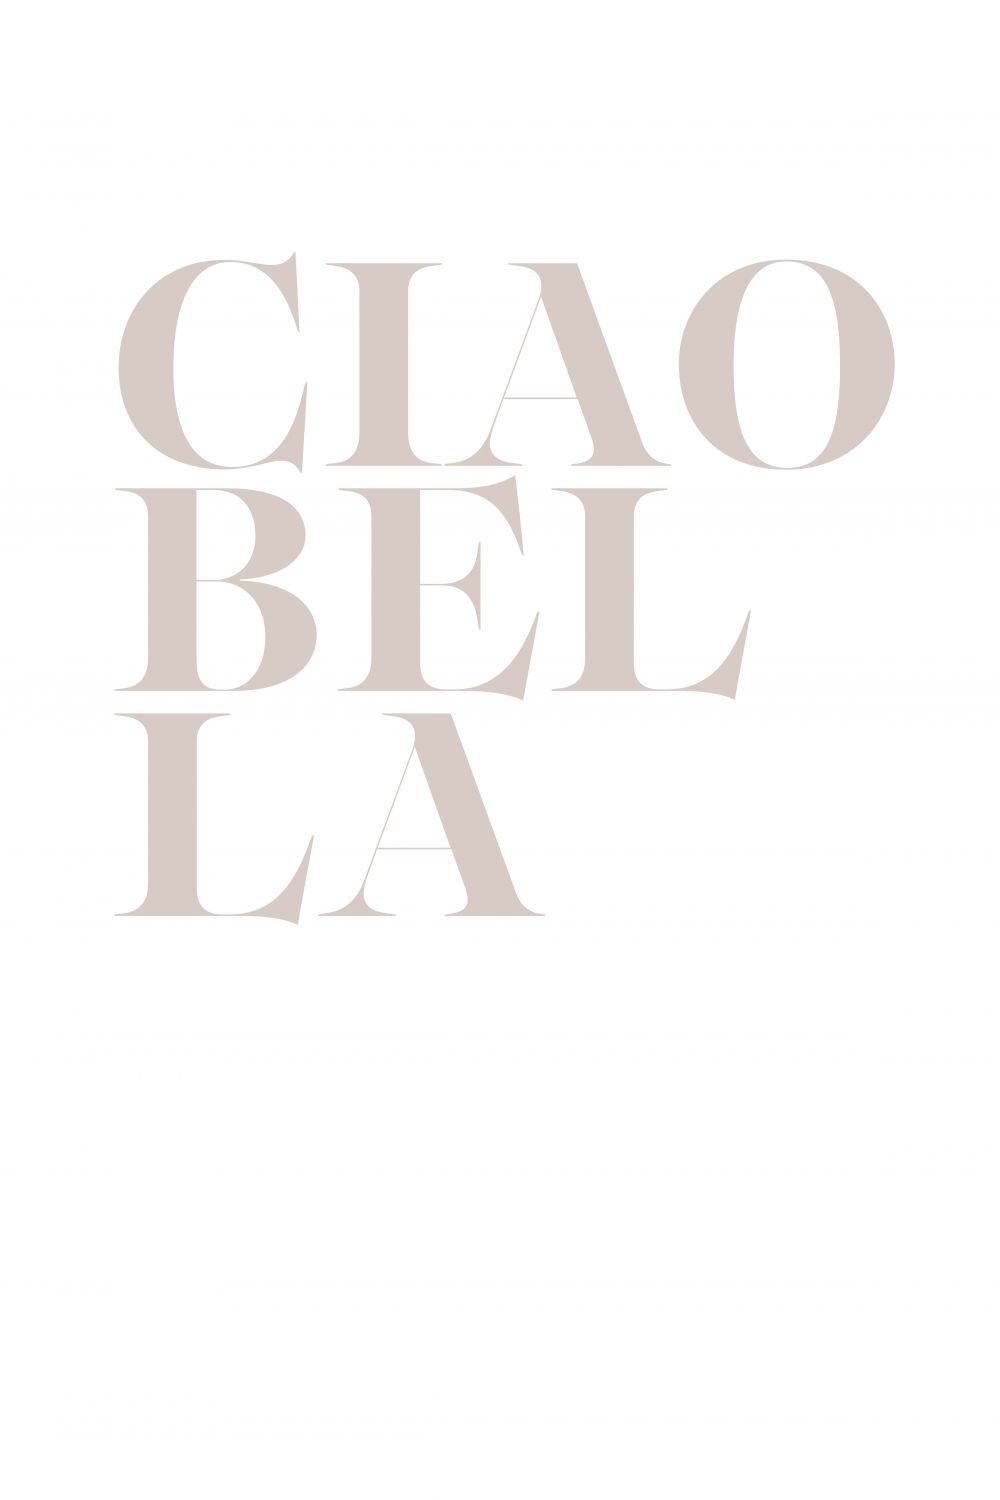 Постер "Ciao bella"